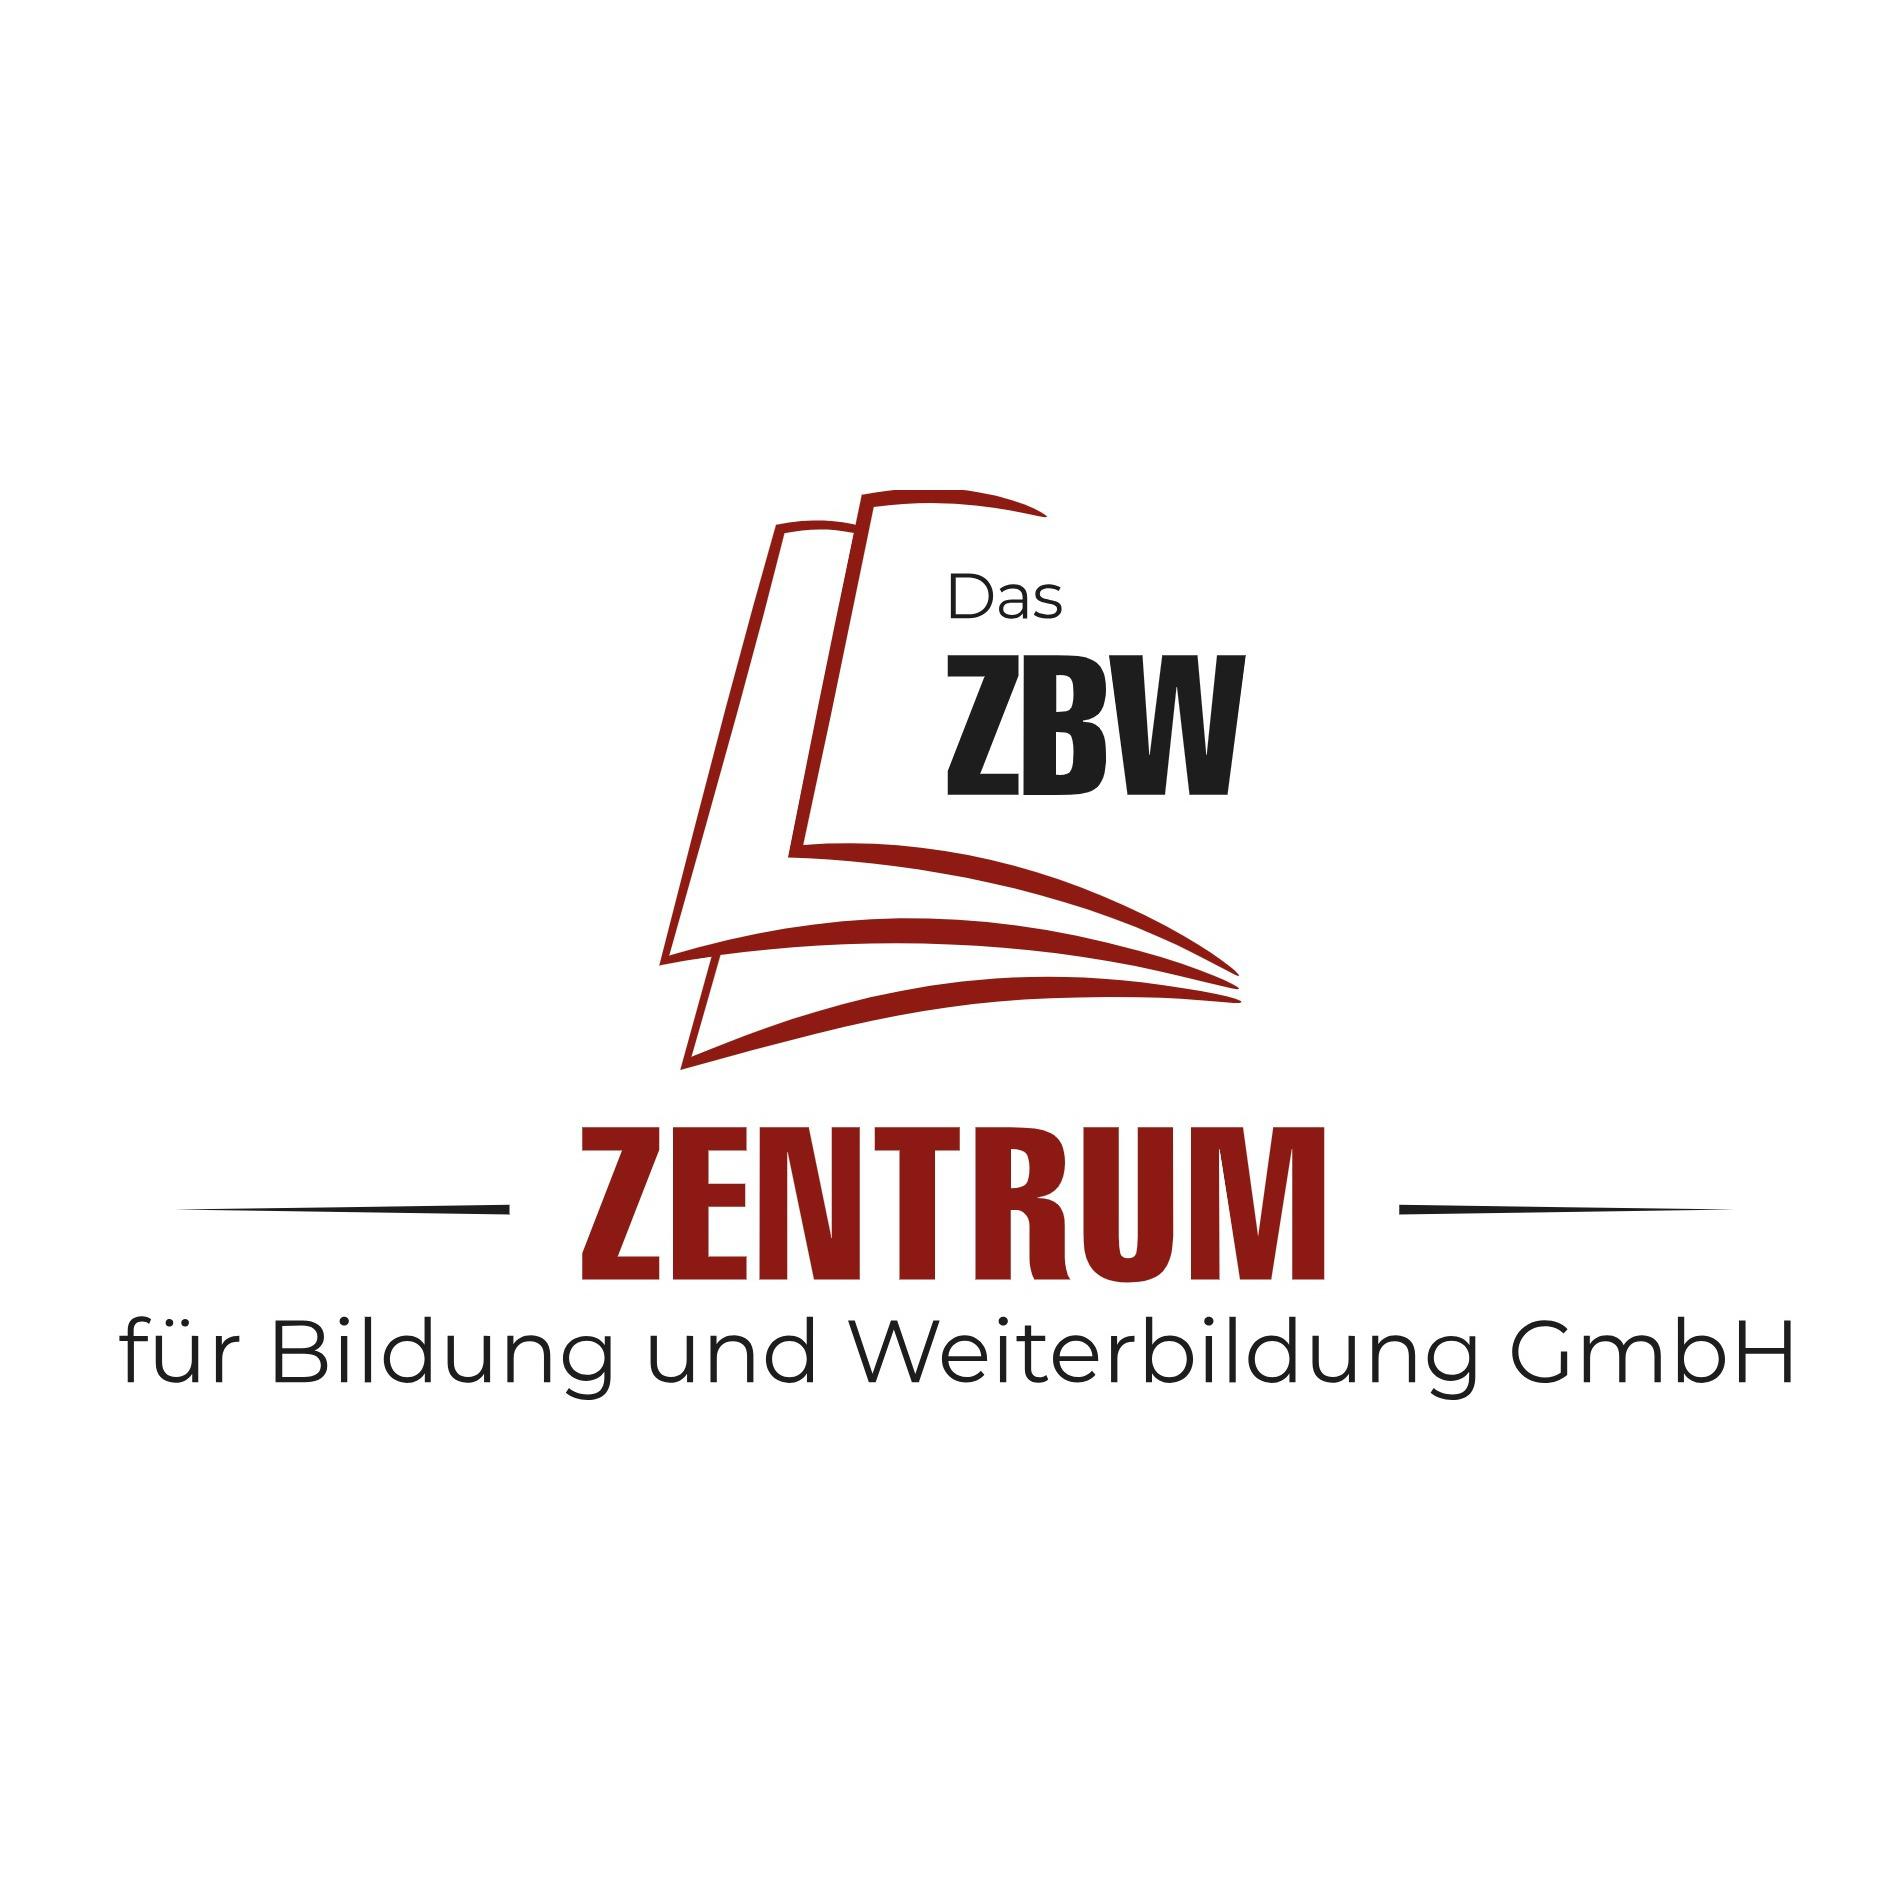 Logo Das ZBW Zentrum für Bildung und Weiterbildung GmbH